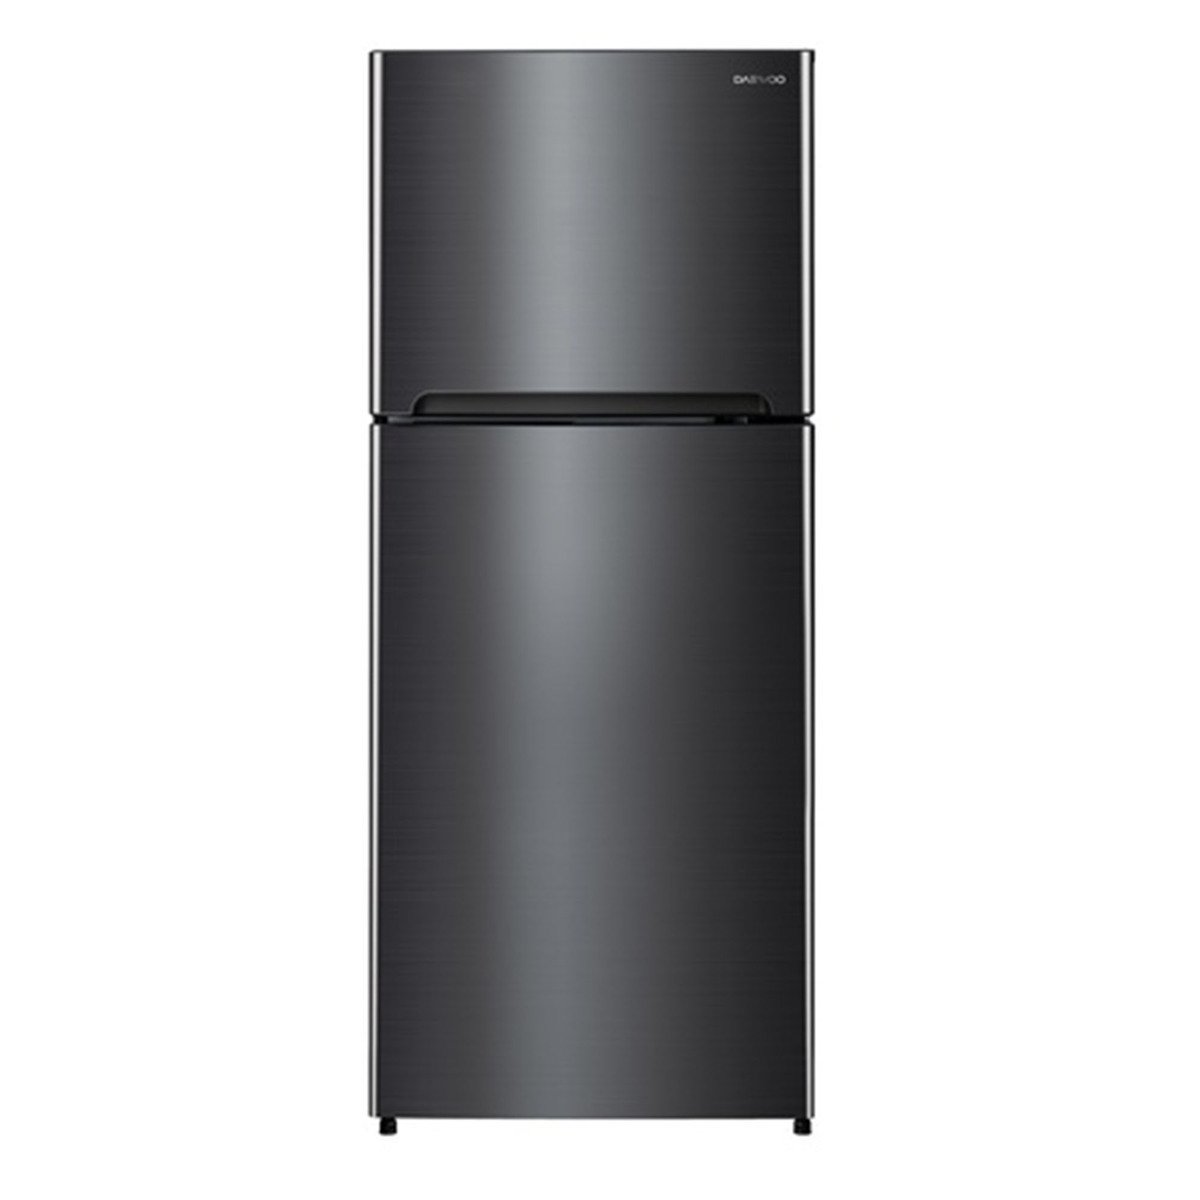 Daewoo Double Door Refrigerator DWFN515SEI 515Ltr